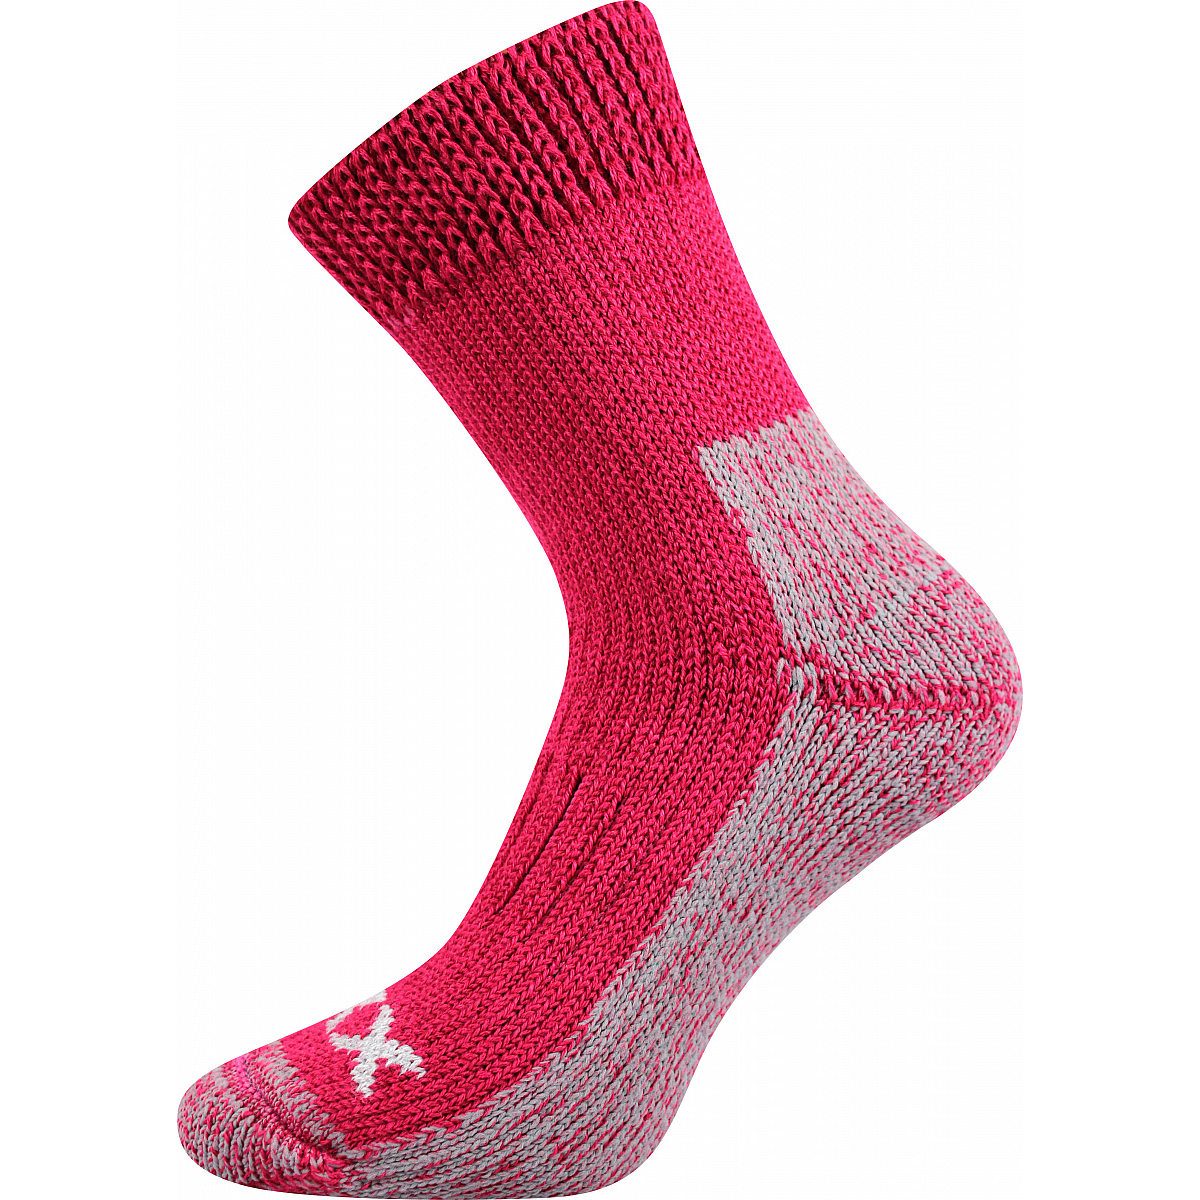 Extra teplé vlněné ponožky Voxx Alpin - růžové-šedé, 39-42